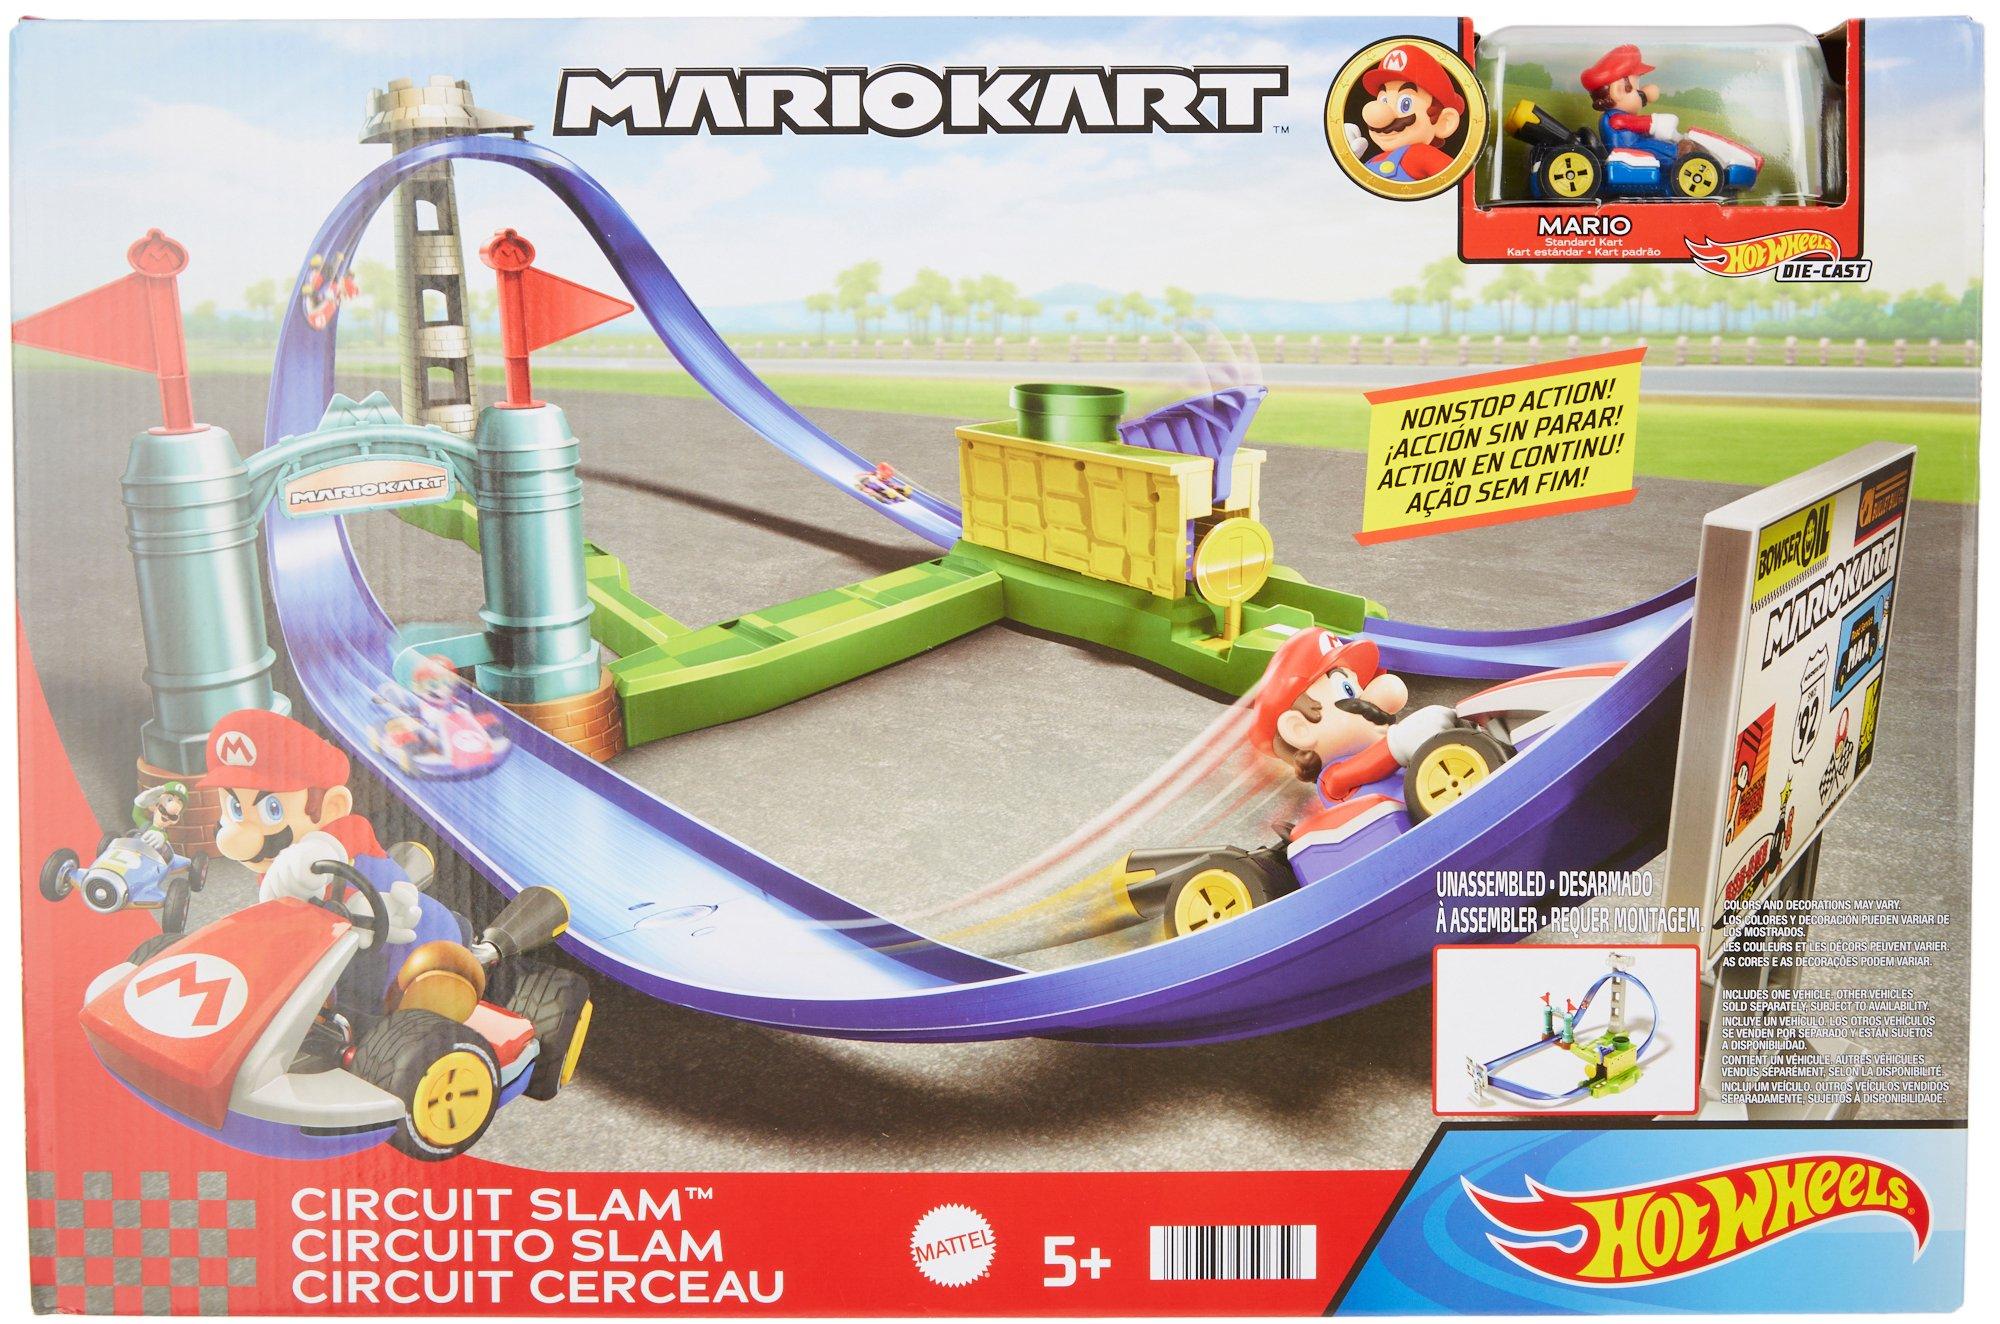 Hot Wheels Mario Kart Circut Slam